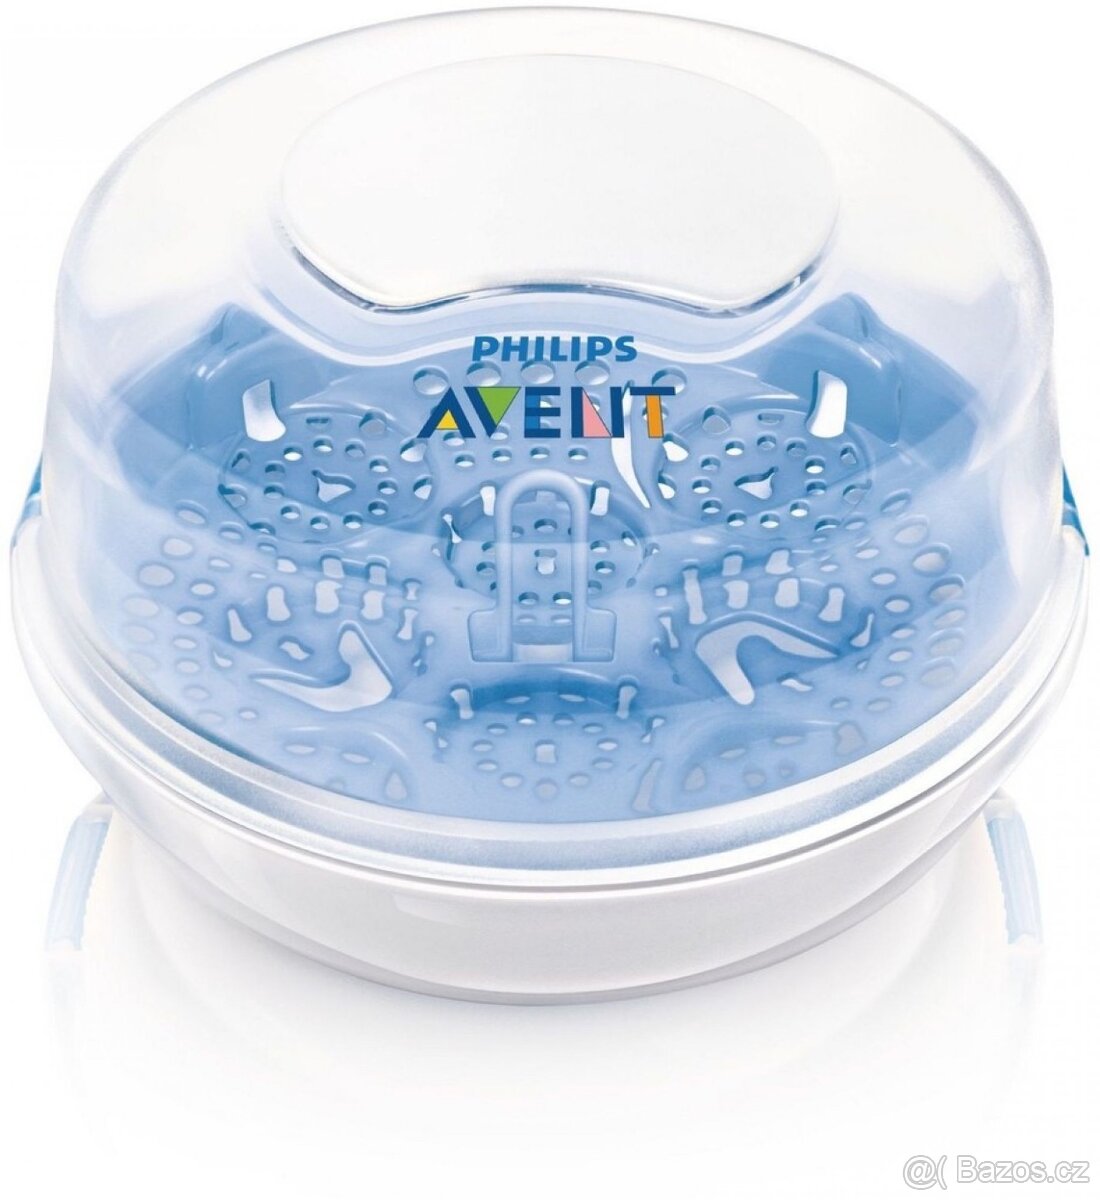 Philips Avent parní sterilizátor do mikrovlnné trouby